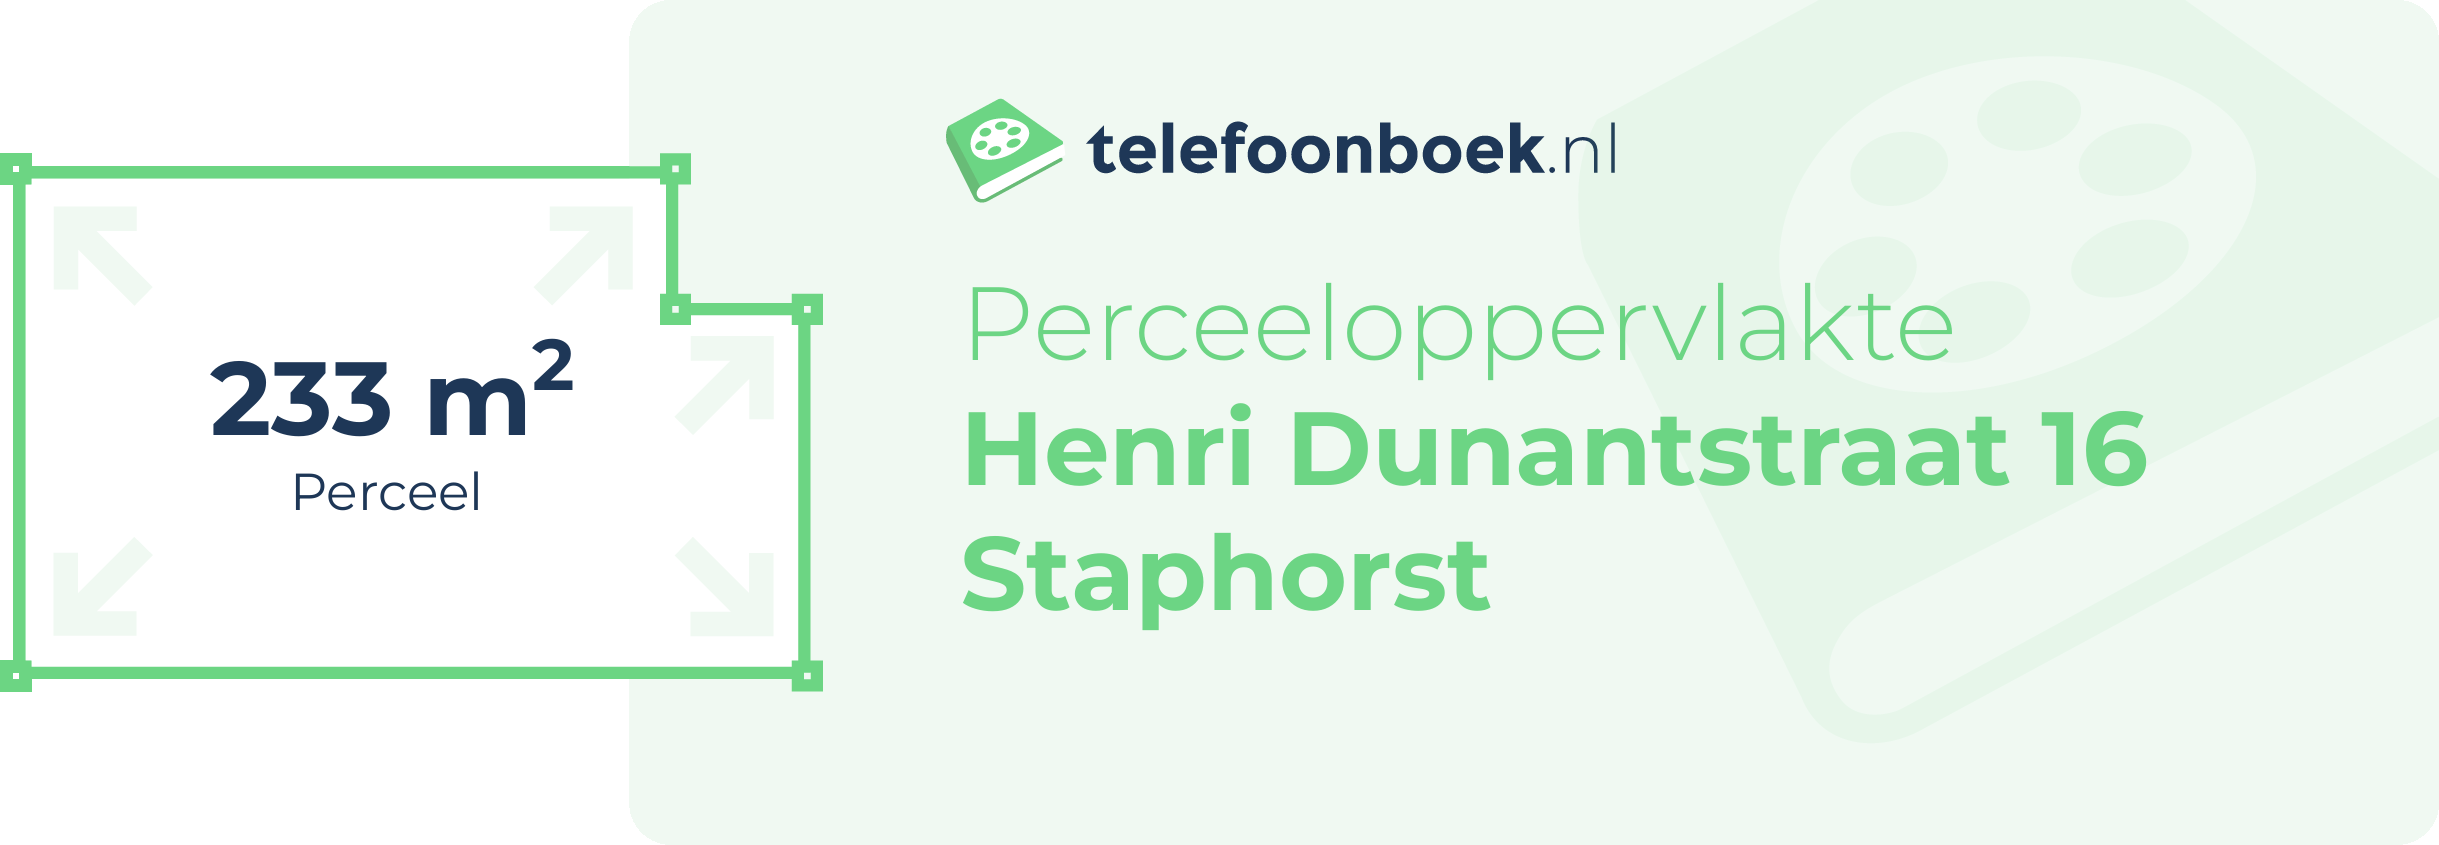 Perceeloppervlakte Henri Dunantstraat 16 Staphorst